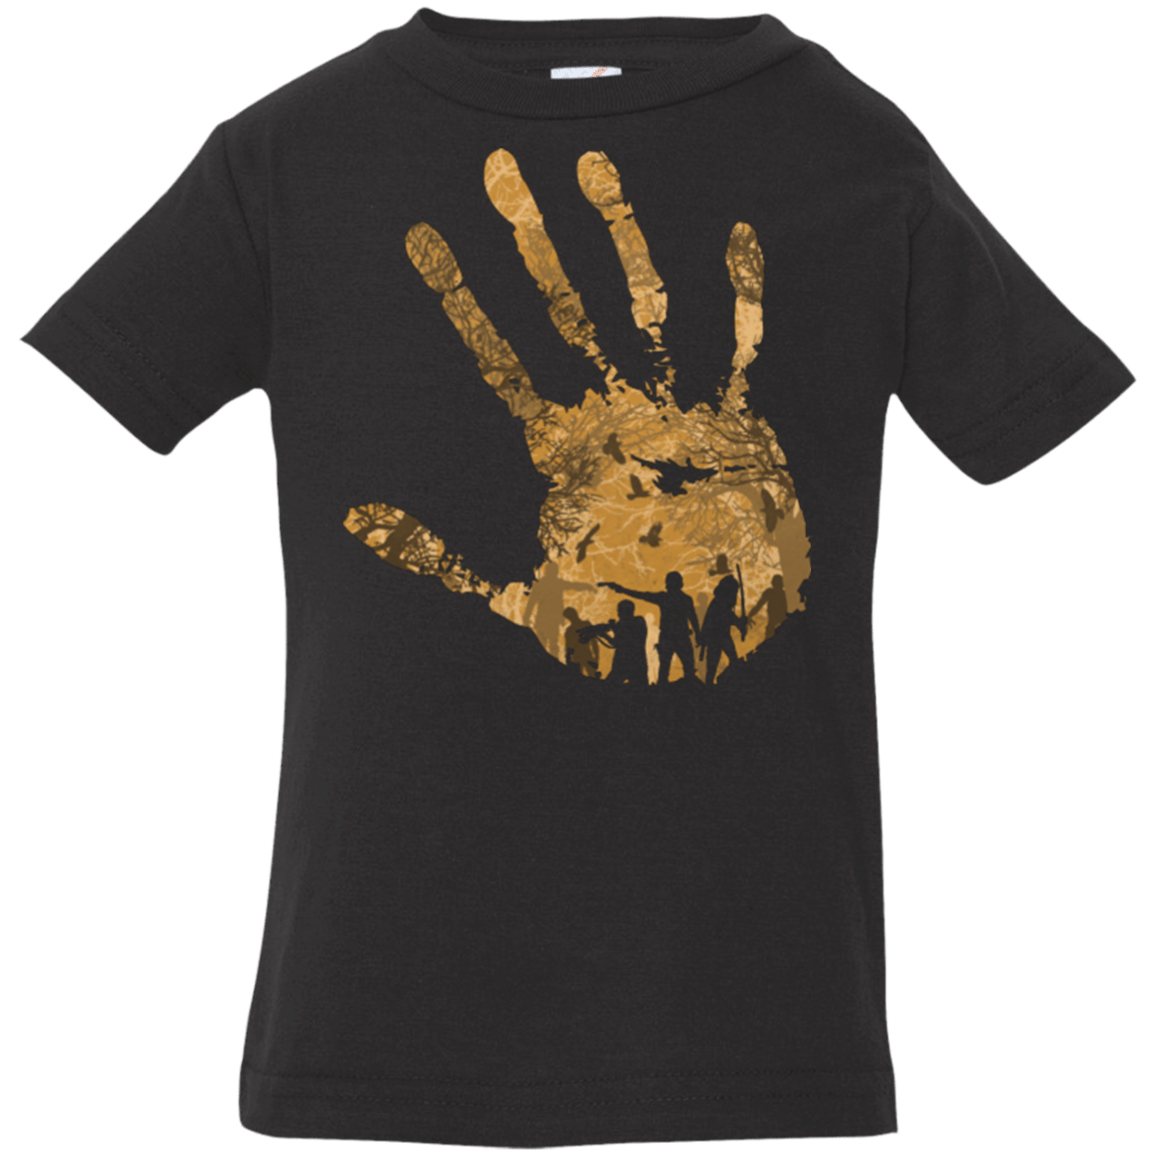 T-Shirts Black / 6 Months The Dead walk! Infant Premium T-Shirt